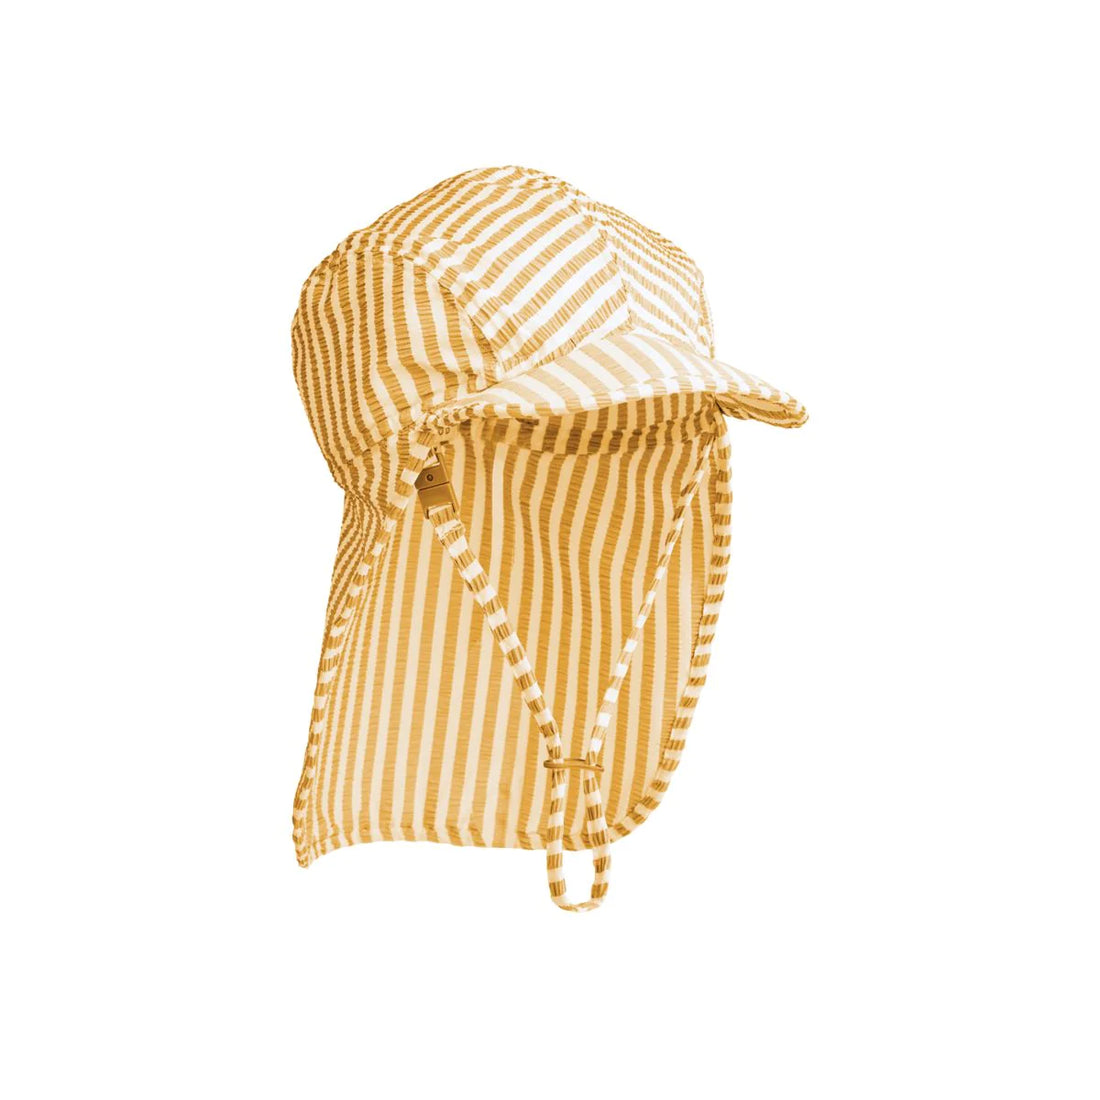 Die Lusio Sonnenkappe ist eine sportliche Variante einer Sonnenkappe und sorgt dafür, dass dein Kind in der Sonne vollständig bedeckt ist. Der leichte Hut hat eine weiche Krempe und zarte Streifen. 